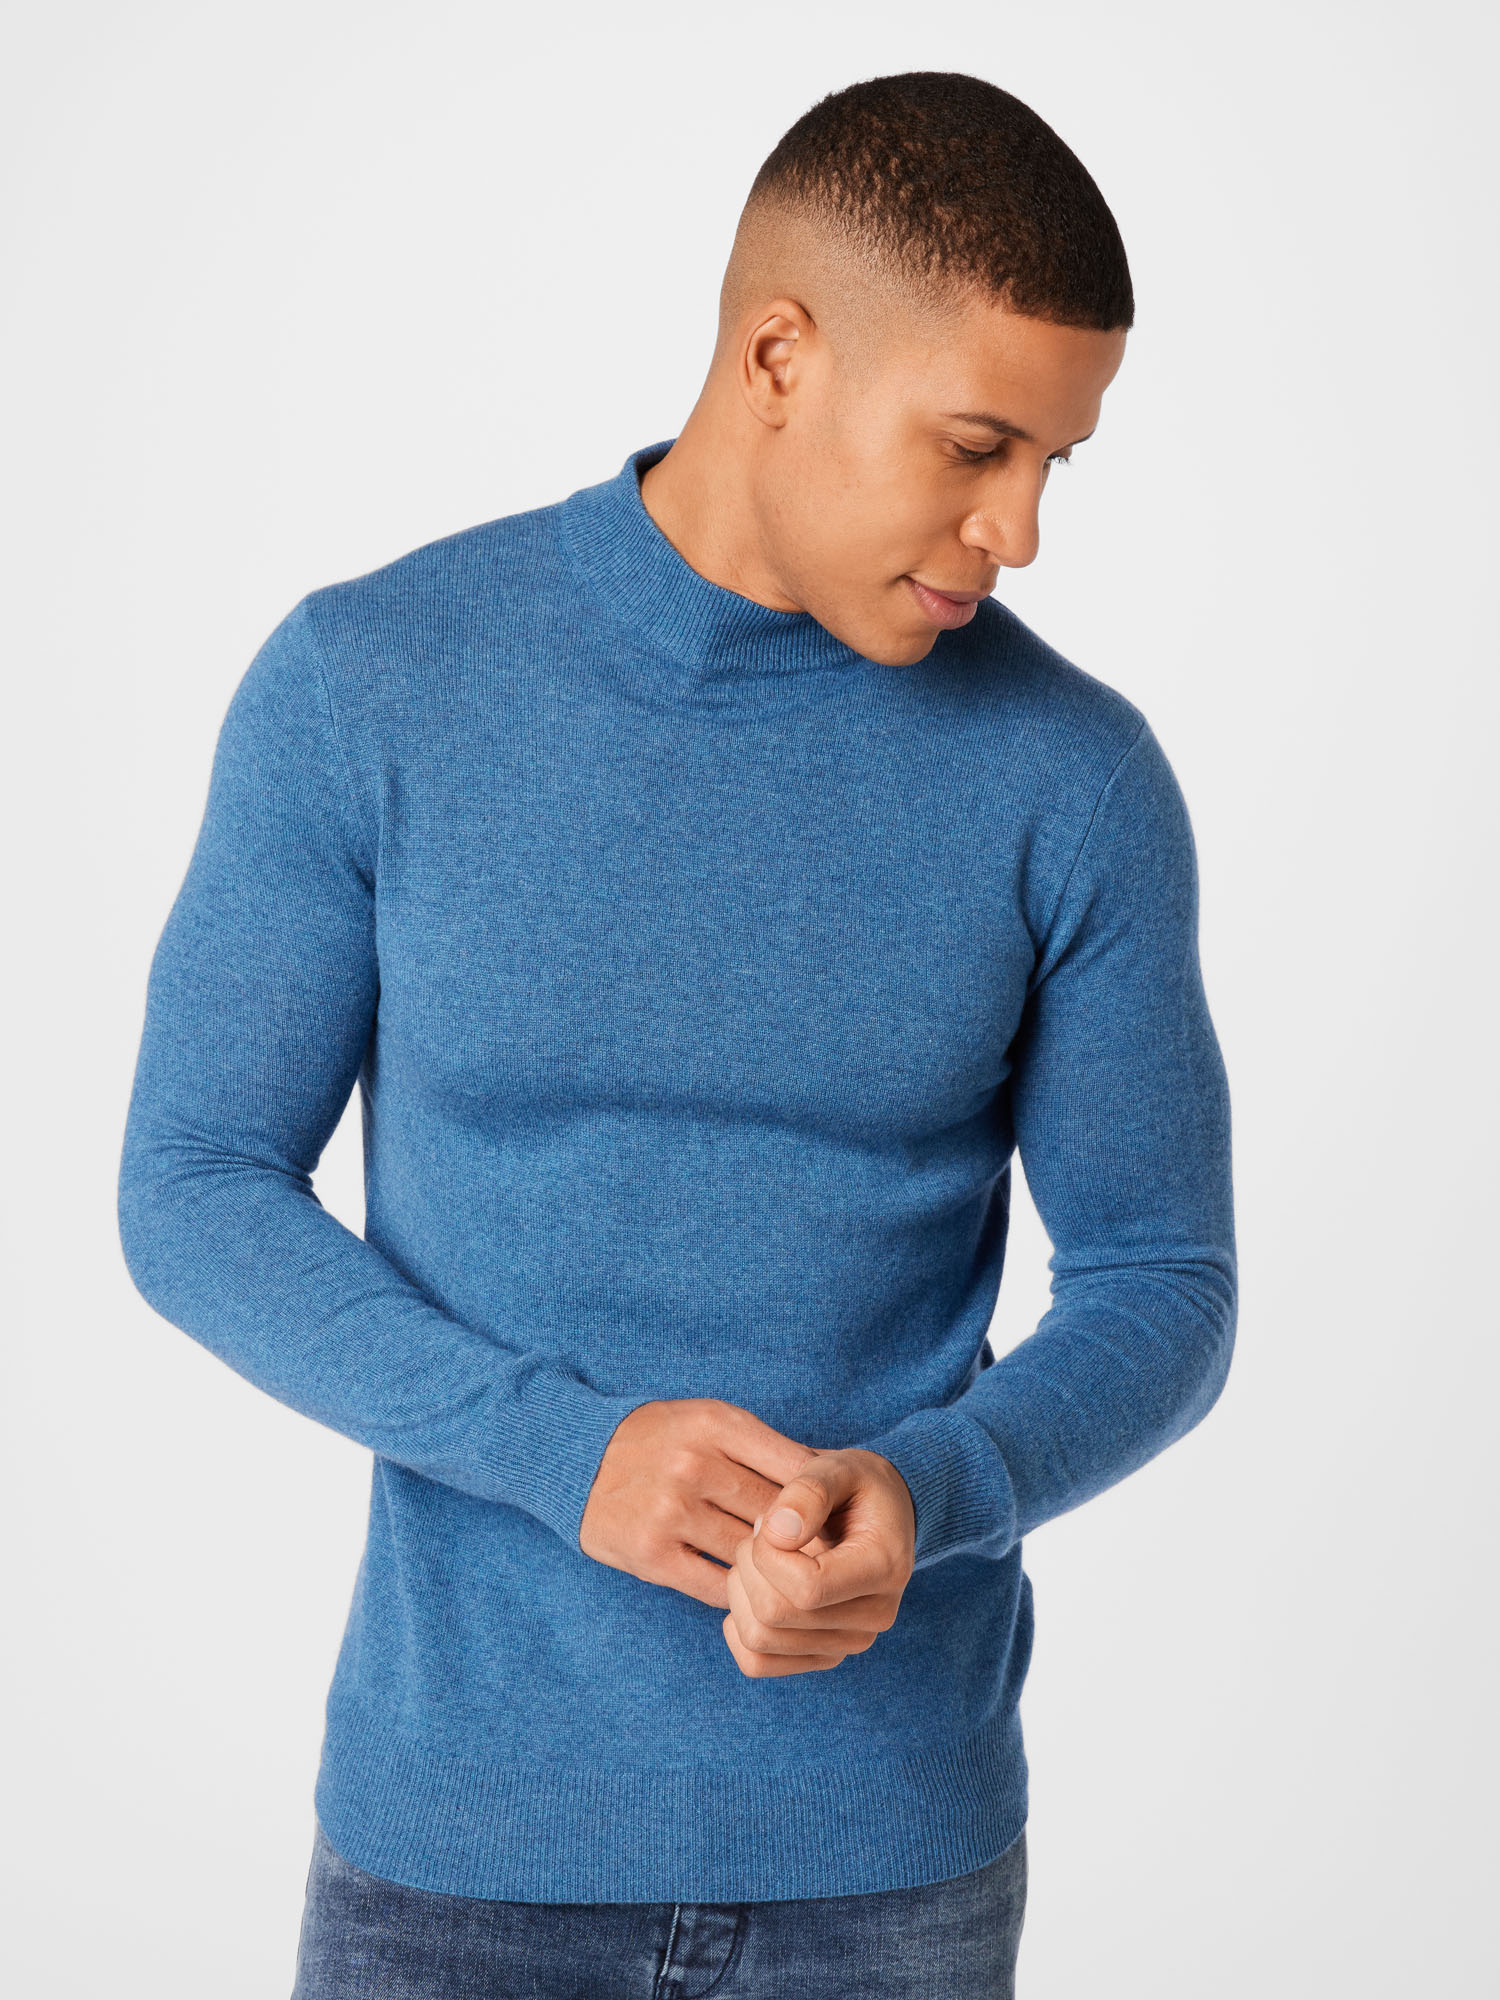 Swetry & kardigany Mężczyźni Pure Cashmere NYC Sweter w kolorze Niebieskim 